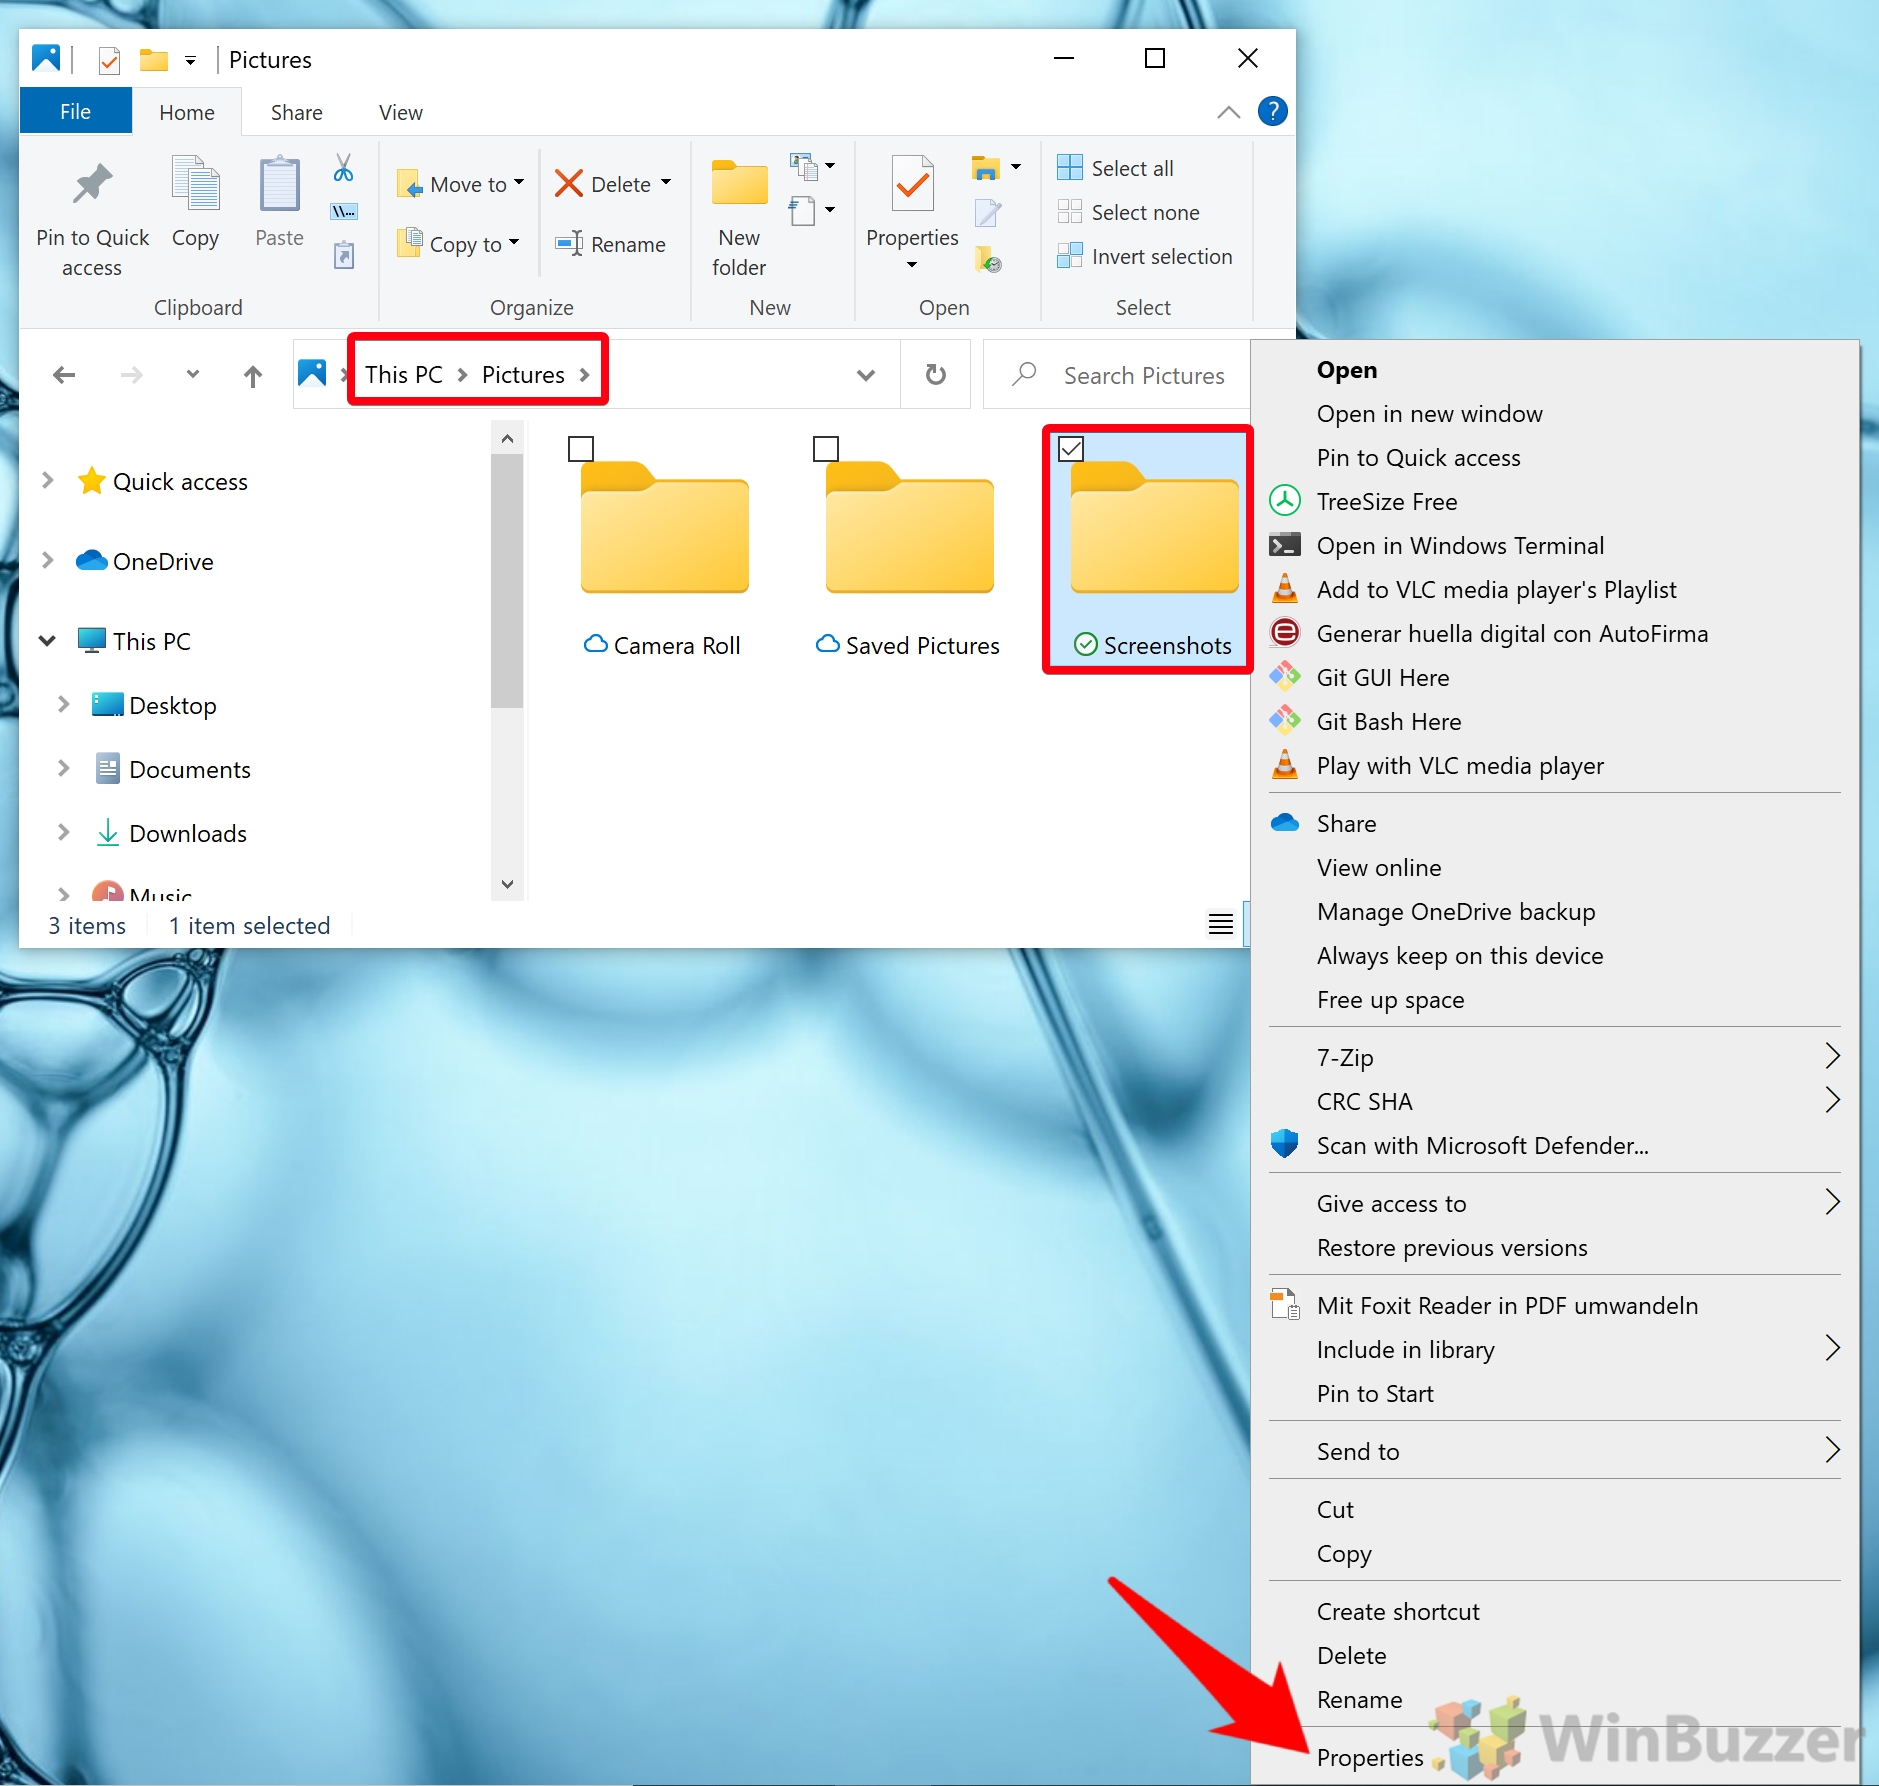 Windows 10 - Screenshots folder - Properties